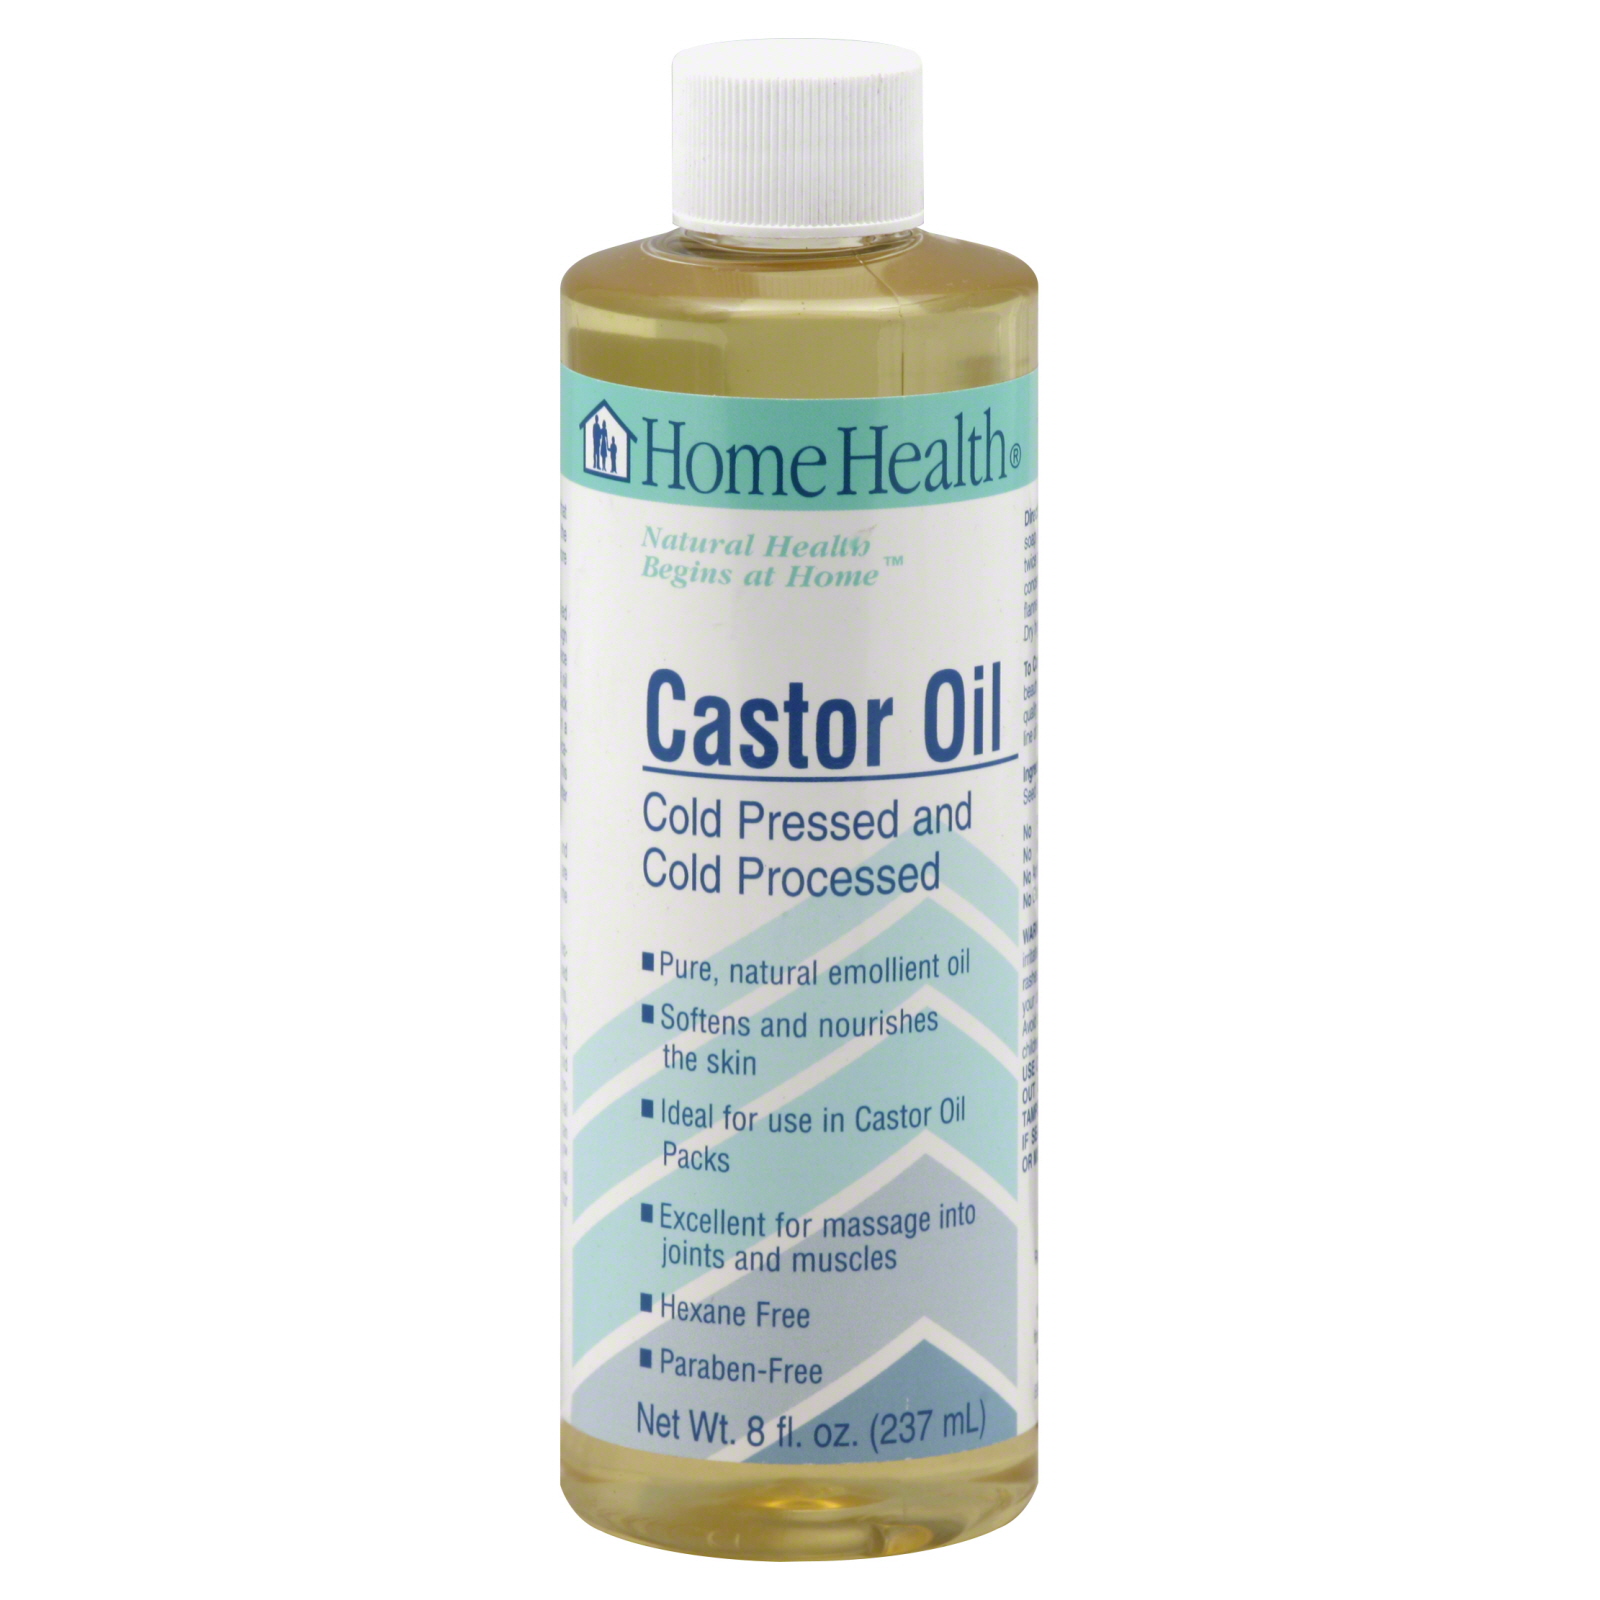 Home Health Castor Oil, 8 ounces